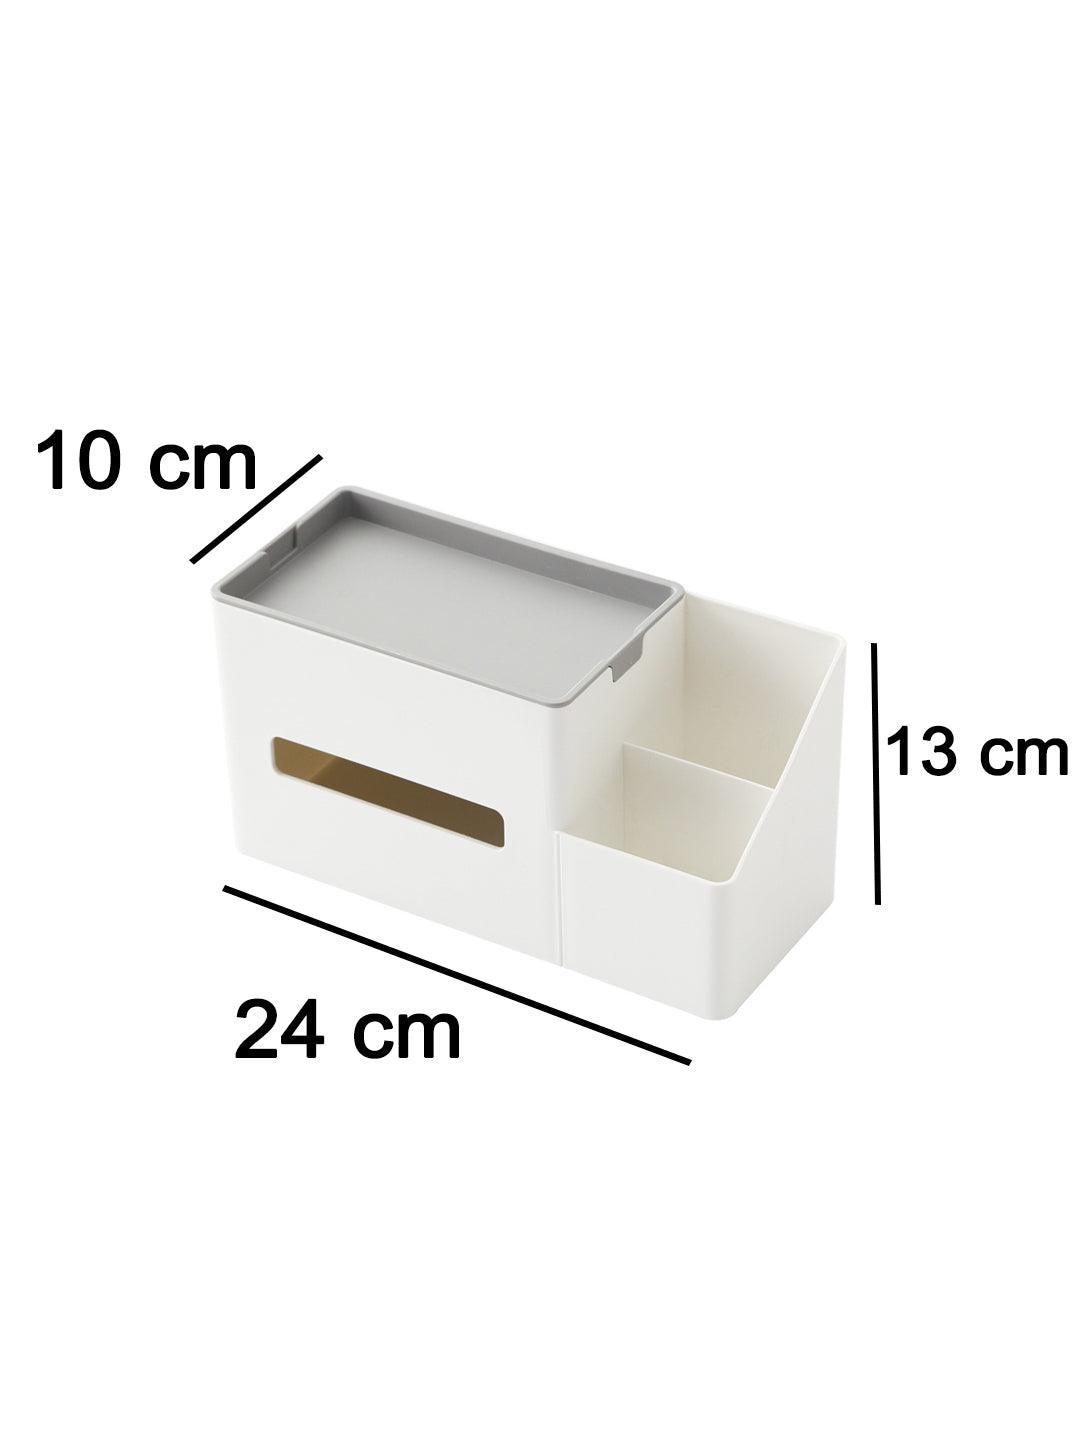 Market99 Napkin Paper Dispenser Organizer - Tissue Box - MARKET 99